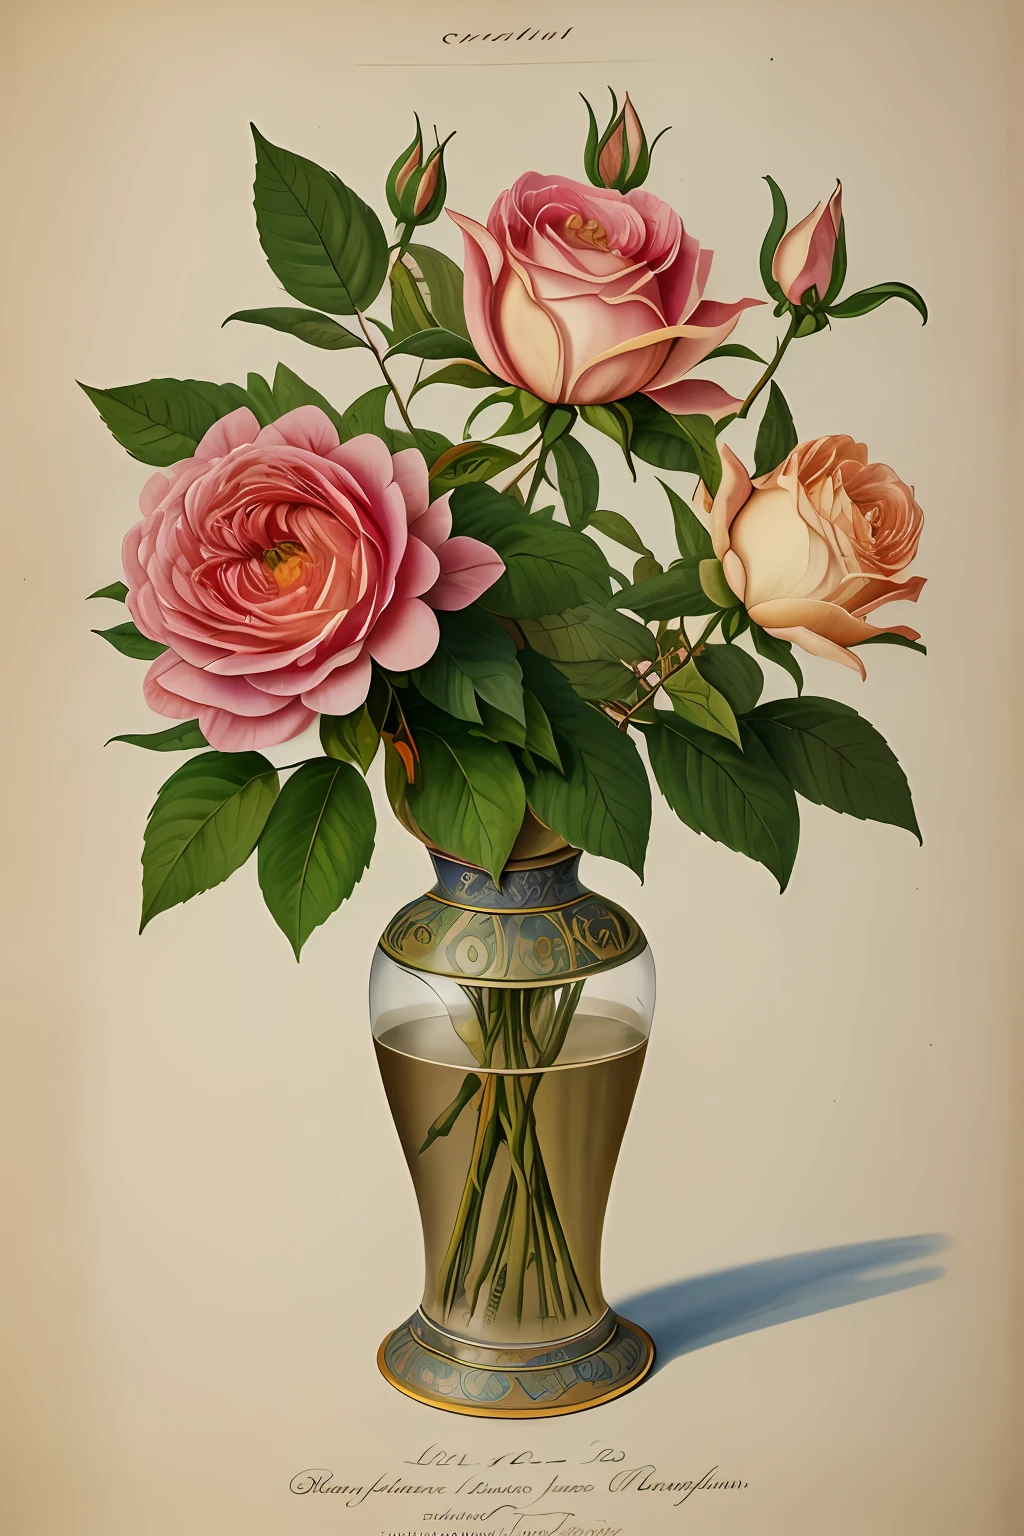 (mejor calidad:1.2), (detallado:1.2), (obra maestra:1.2), ilustraciones botánicas antiguas de la rosa provenzal más grande (1770 1775) en alta resolución por John Edwards